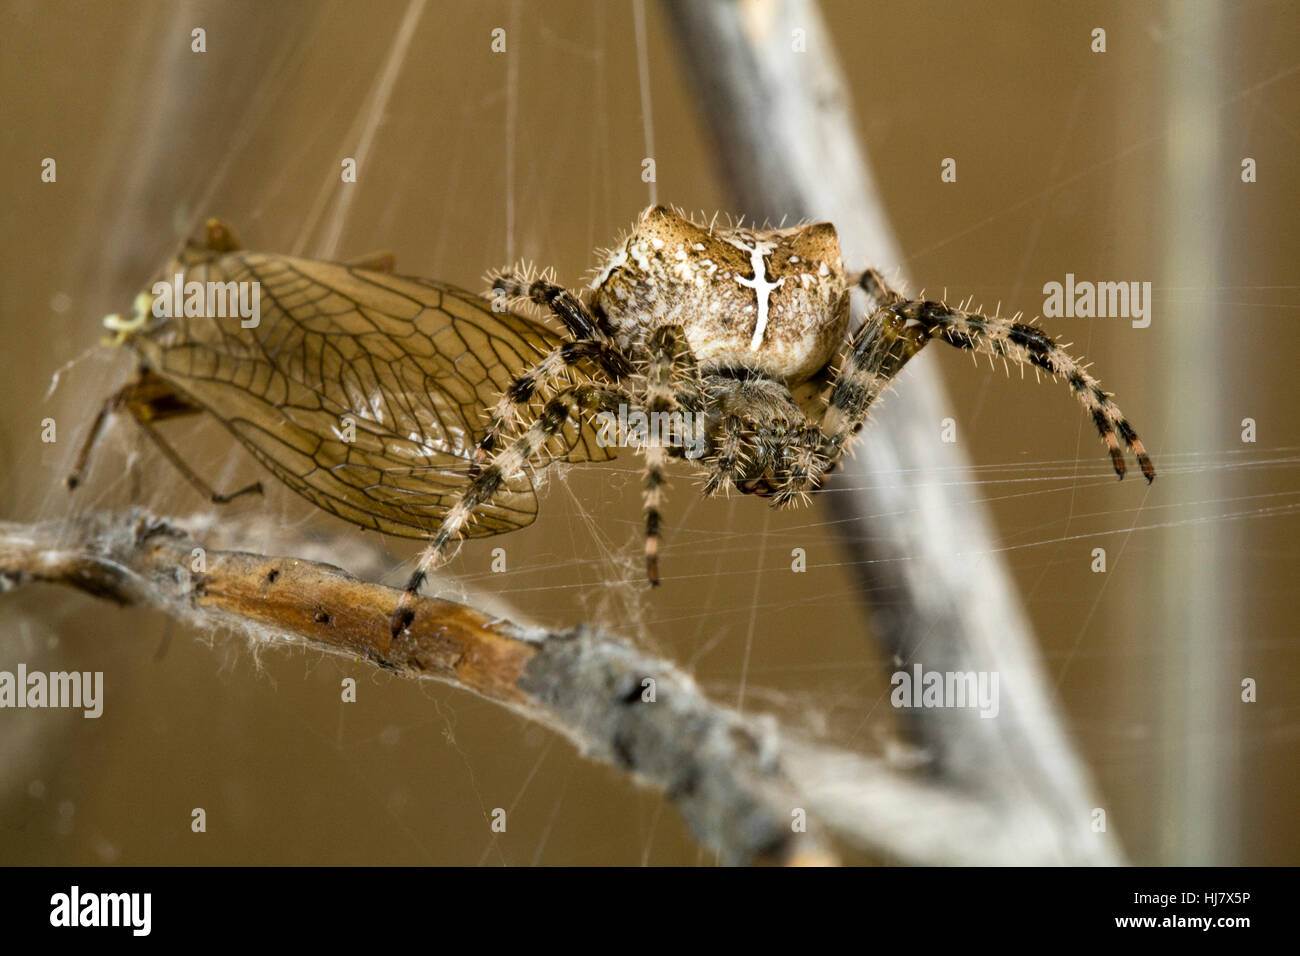 Ein Kreuz Orbweaver Spinne, Araneus Diadematus, in ihrem Netz mit einem goldenen Steinfliegenmuster, die sie gefangen genommen. Stockfoto